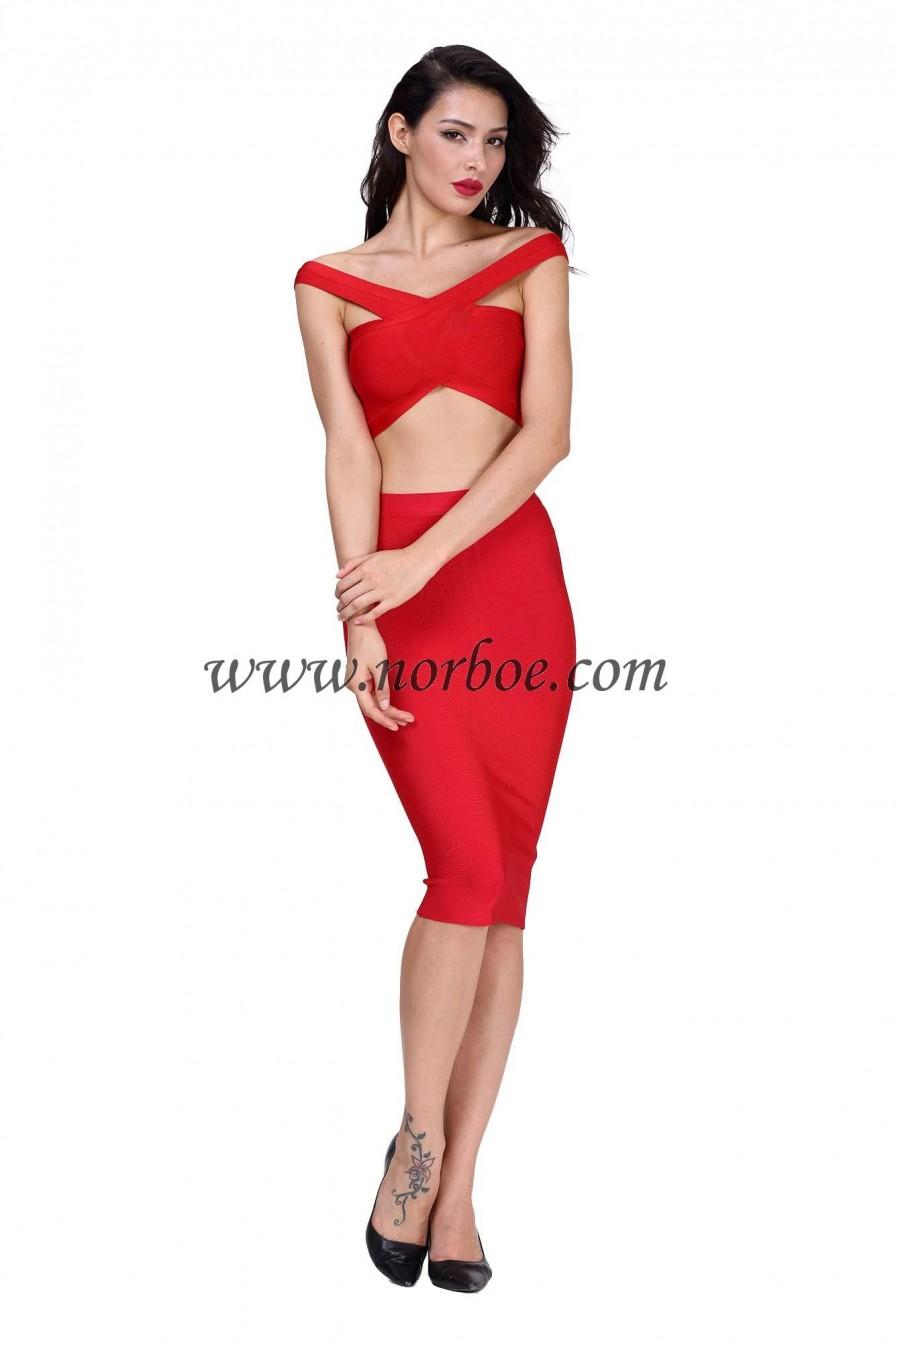 زفاف - Norboe The Celebrity Red Bandage Dress